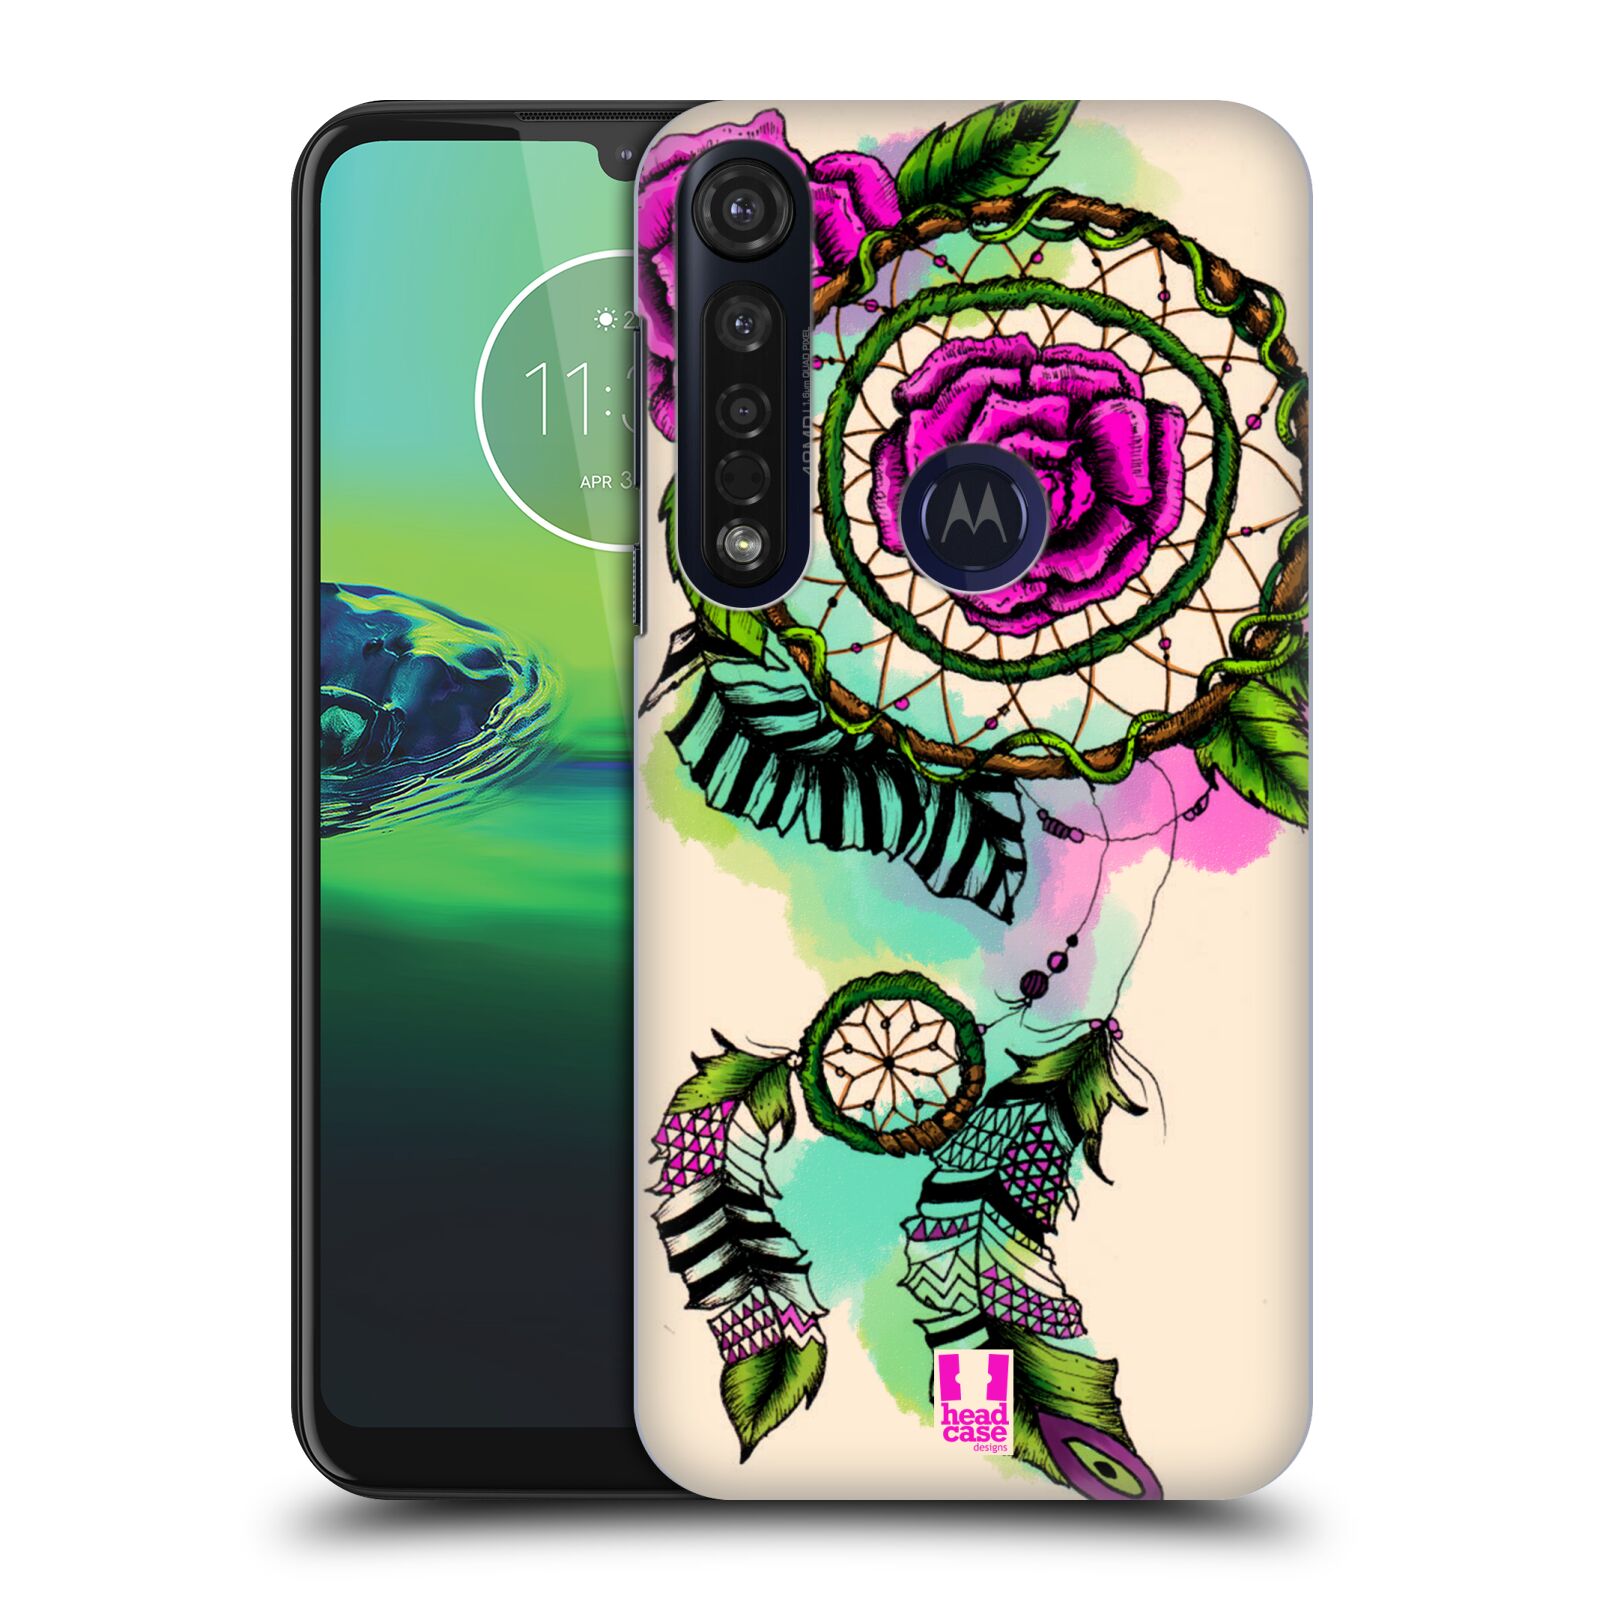 Pouzdro na mobil Motorola Moto G8 PLUS - HEAD CASE - vzor Květy lapač snů růže